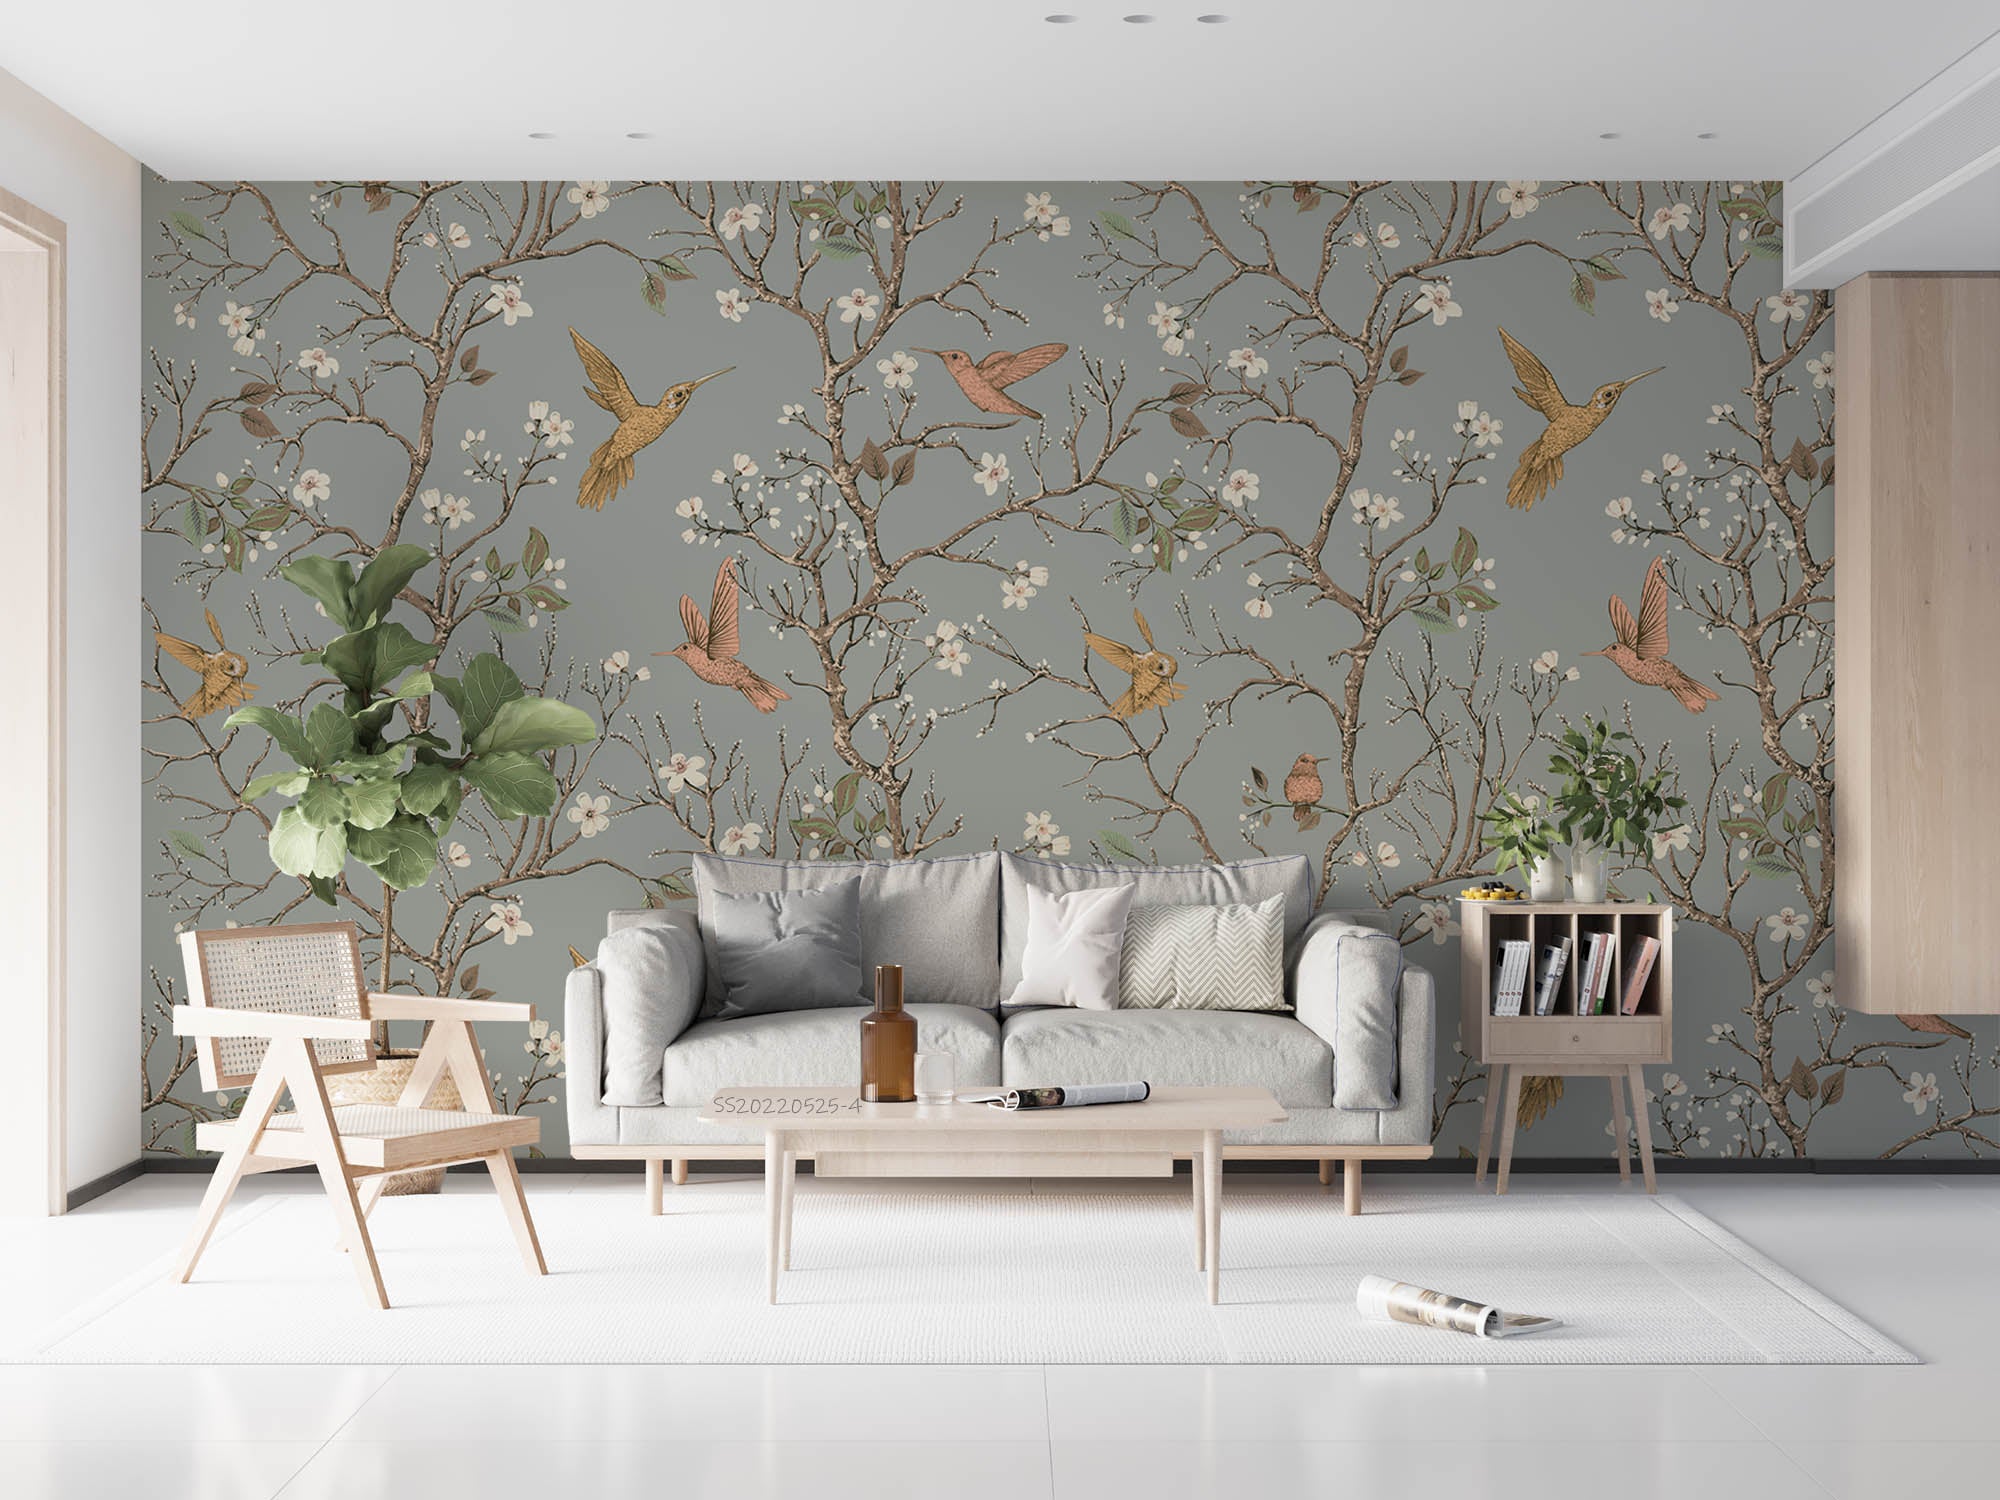 3D Vintage Branch Floral Bird Wall Mural Wallpaper GD 675- Jess Art Decoration